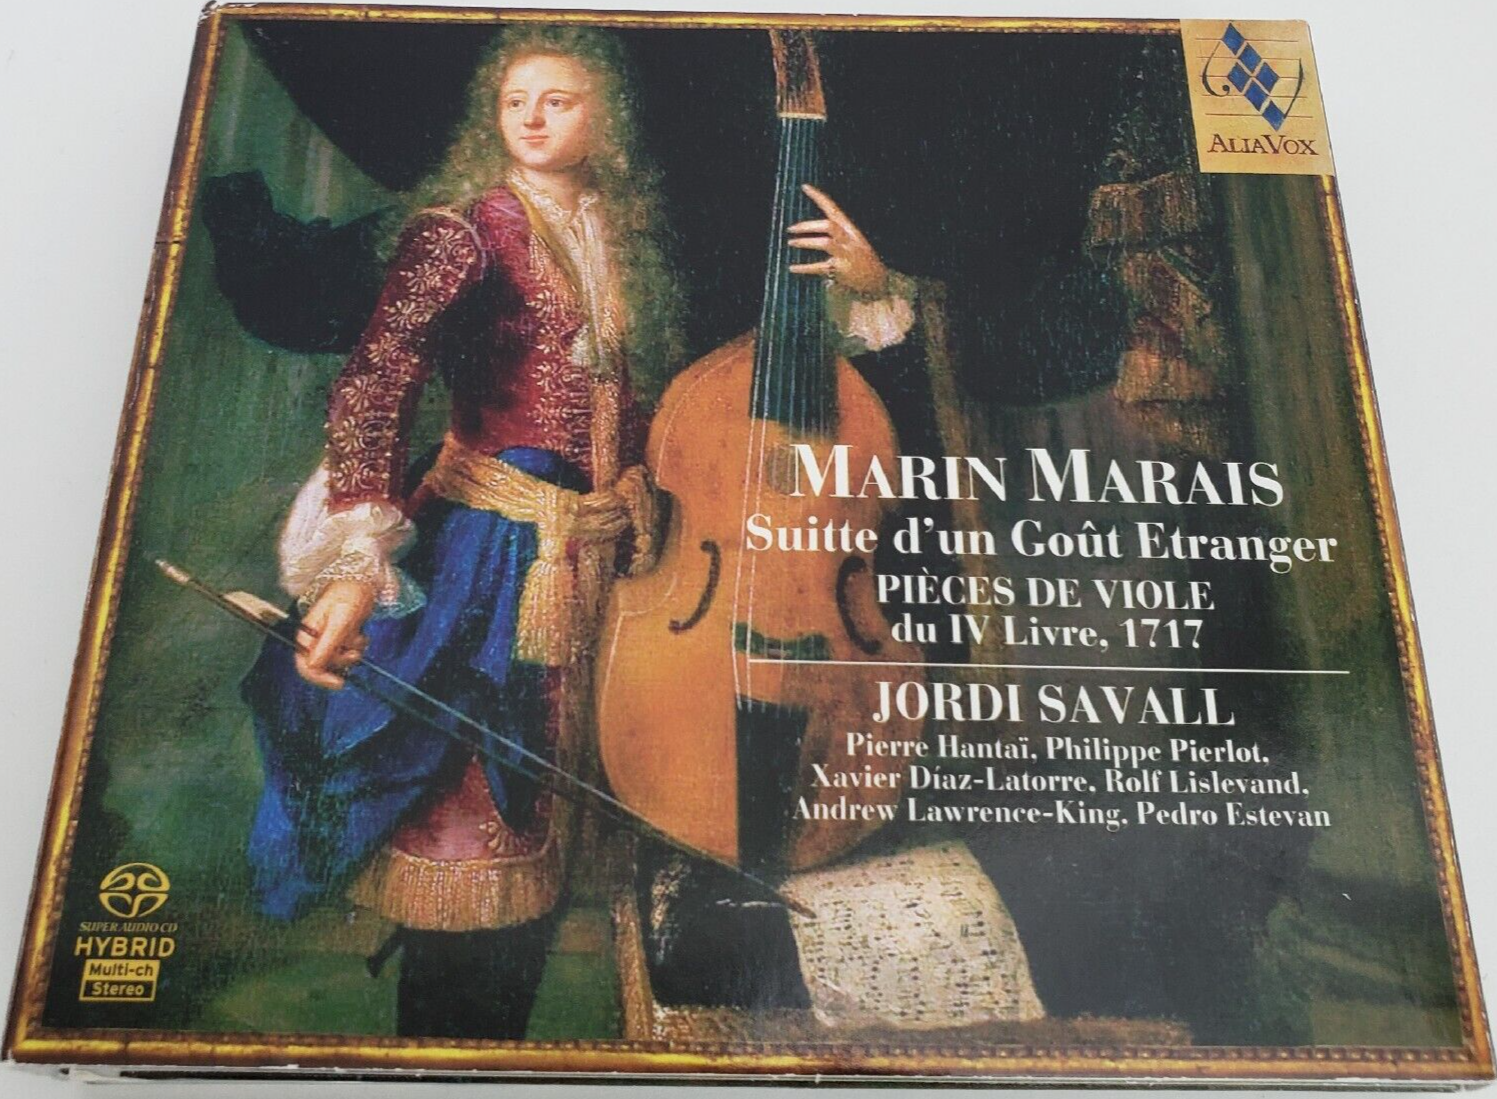 Primary image for Marin Marais: Suitte d'un Gout Etranger Pieces de Viole due IV Livre 1717 CD